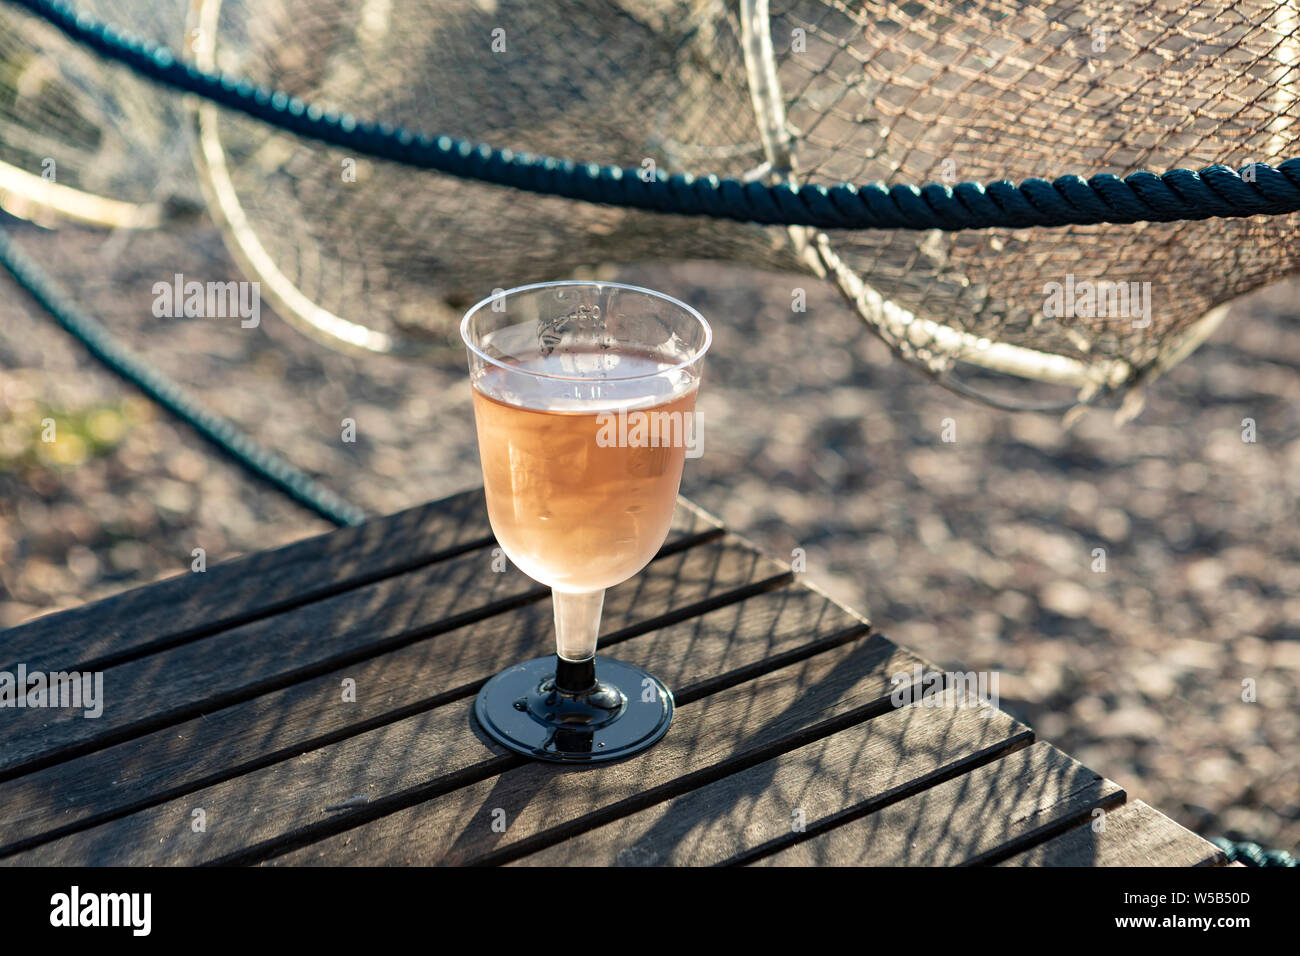 Copa de vino rosado con una red de pesca en el fondo Foto de stock